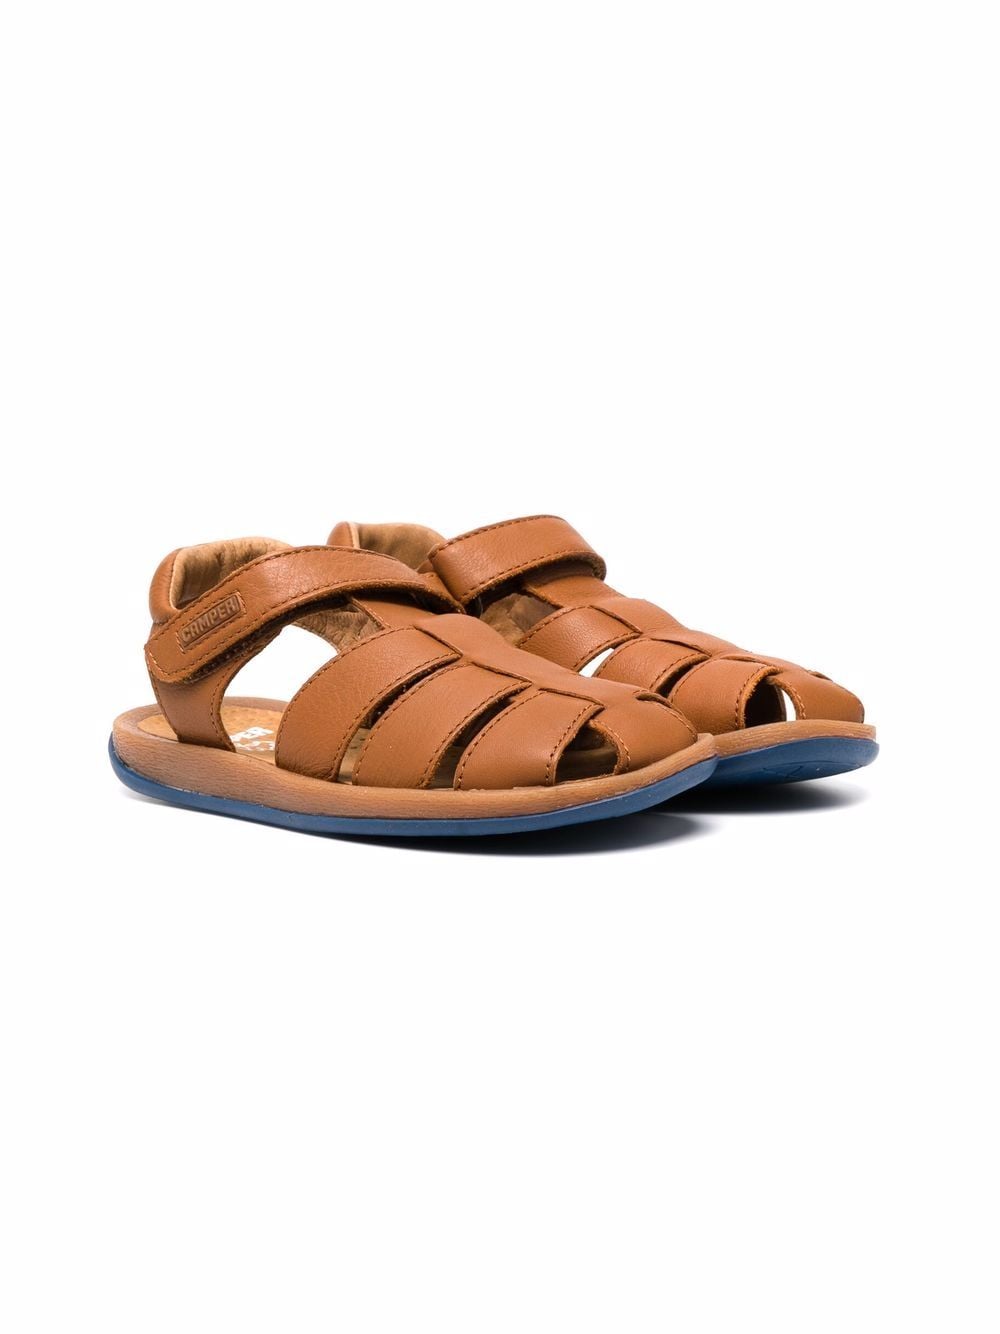 Camper Kids Bicho leather sandals - Brown von Camper Kids